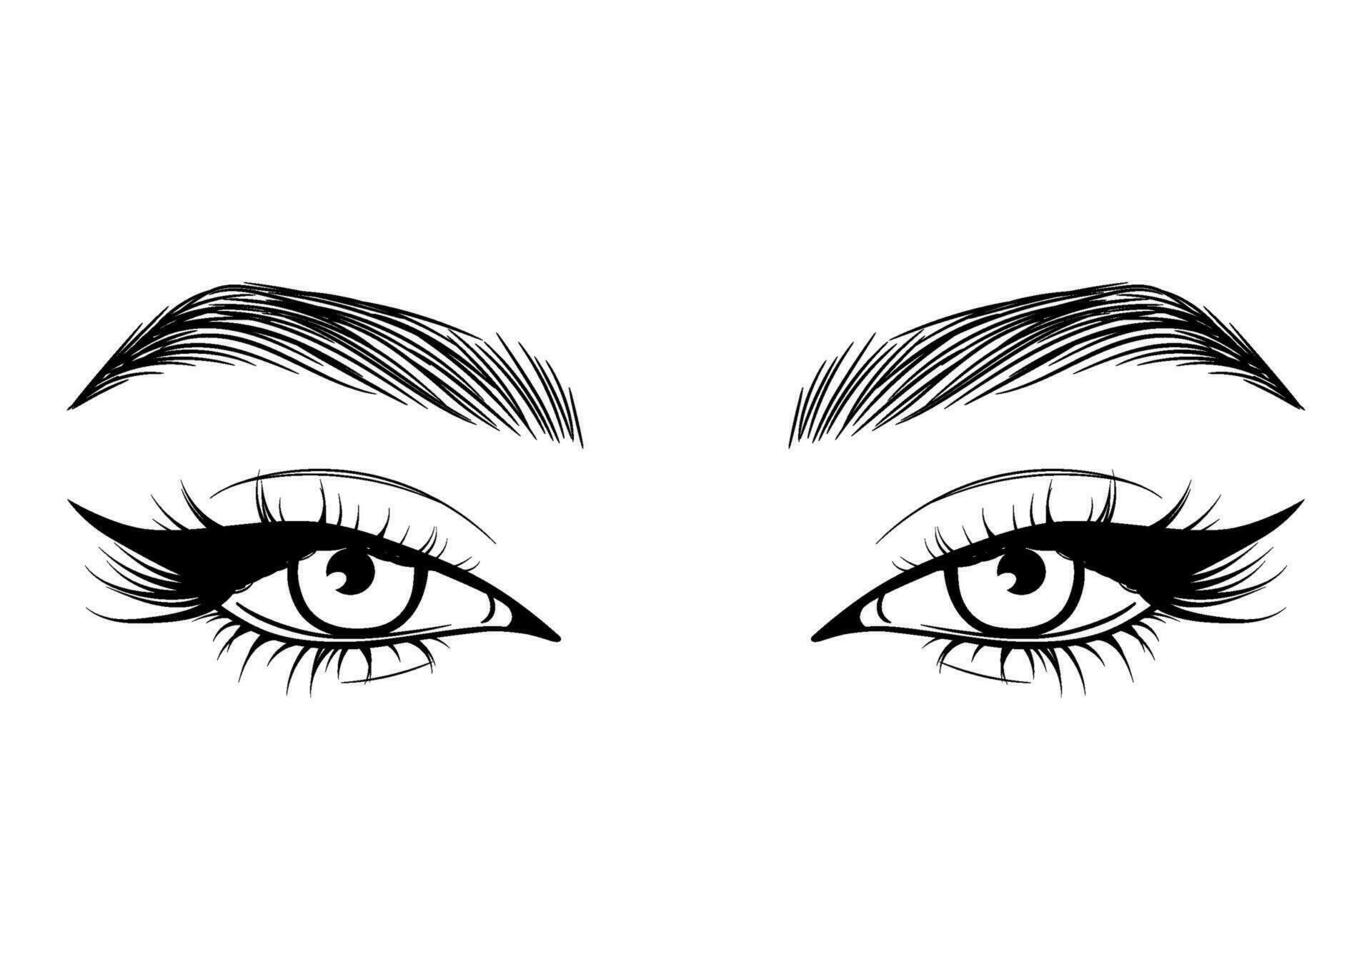 Vektor Hand gezeichnet schön weiblich Augen mit lange schwarz Wimpern und Brauen schließen hoch.